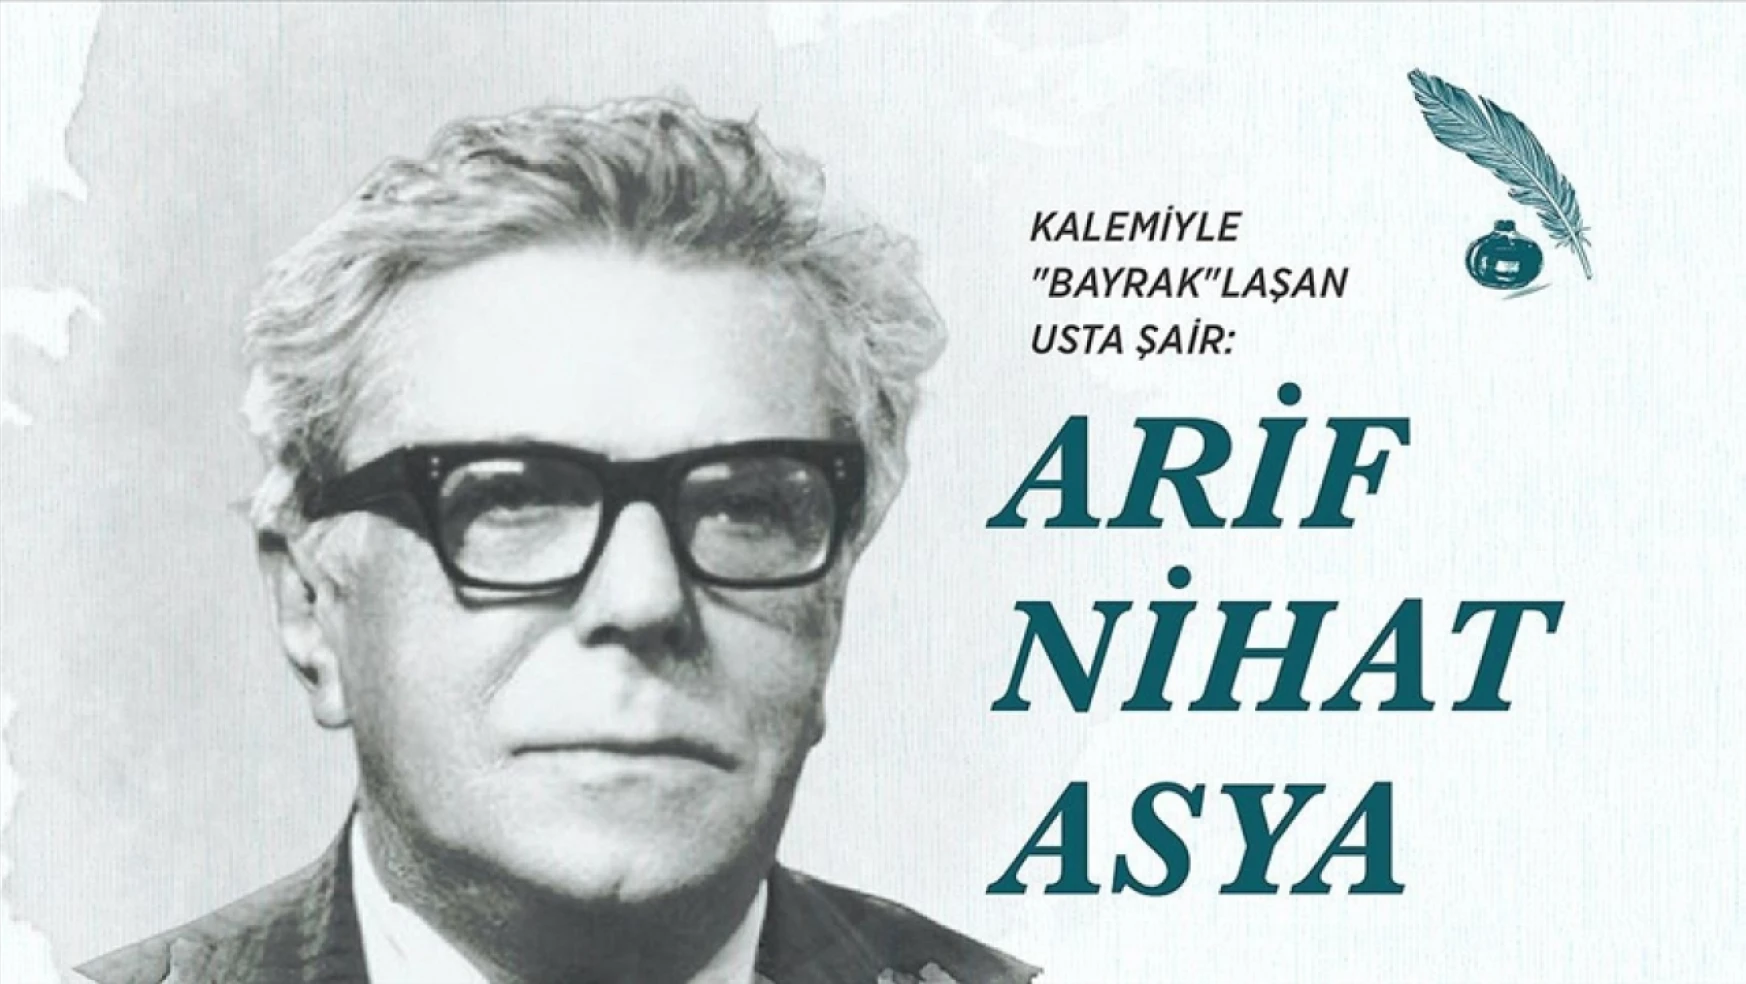 Kalemiyle 'Bayrak'laşan usta şair: Arif Nihat Asya